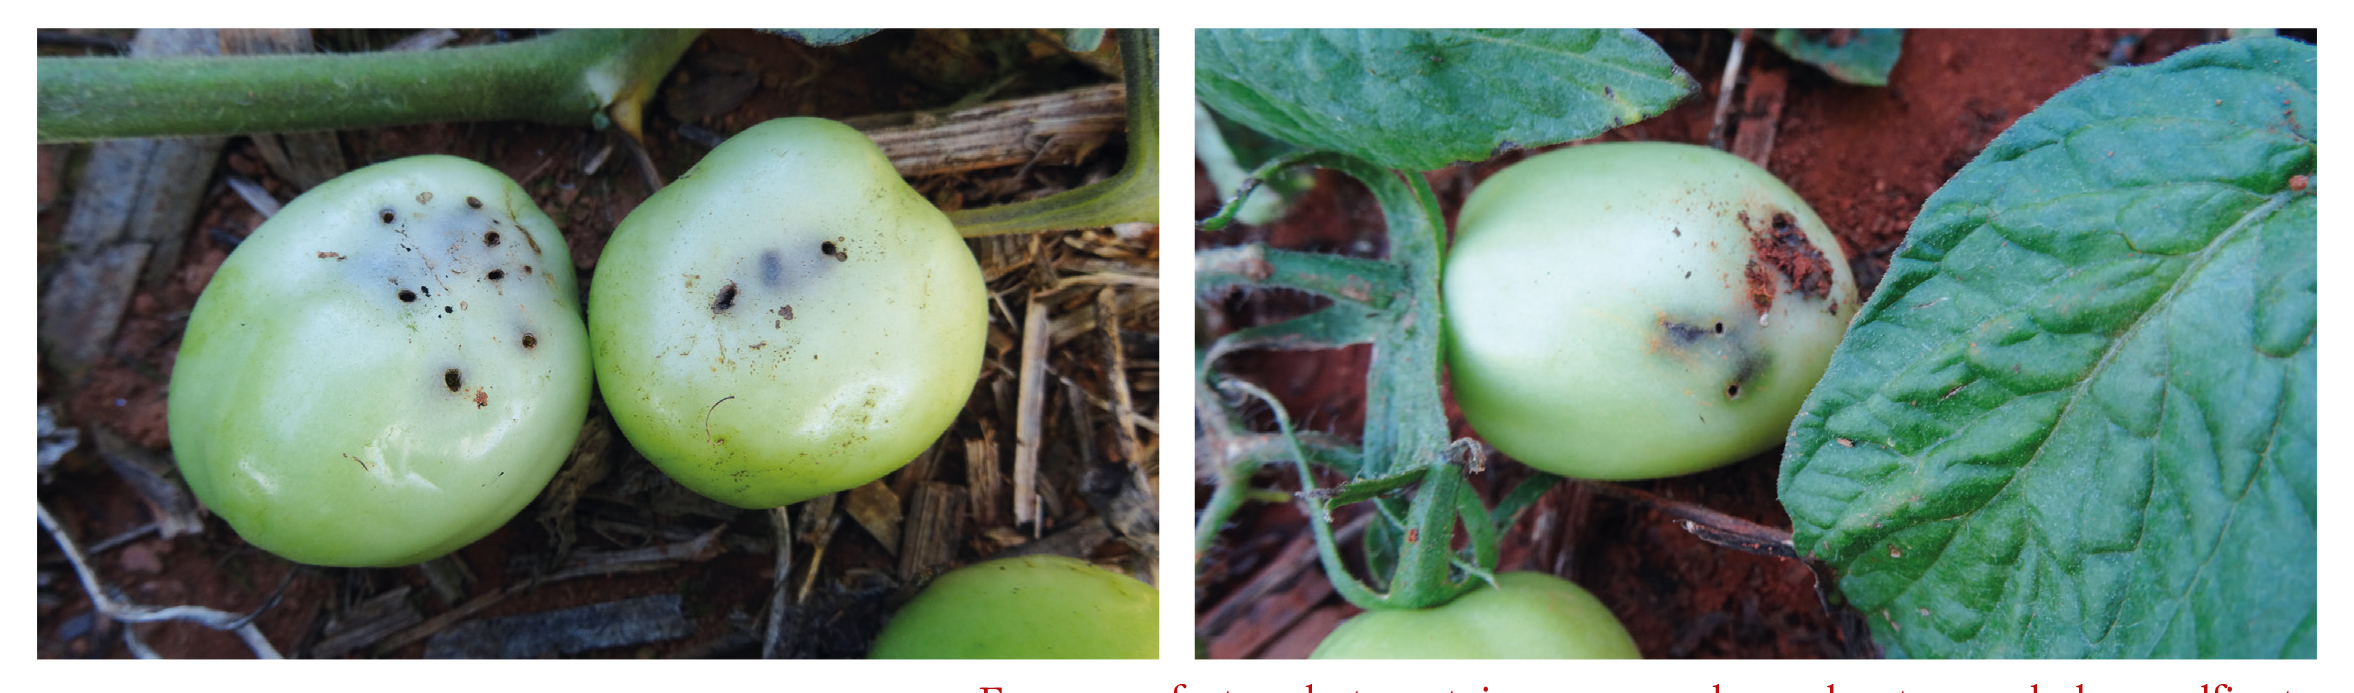 Furos em frutos de tomateiro provocados pelo ataque da larva alfinete.